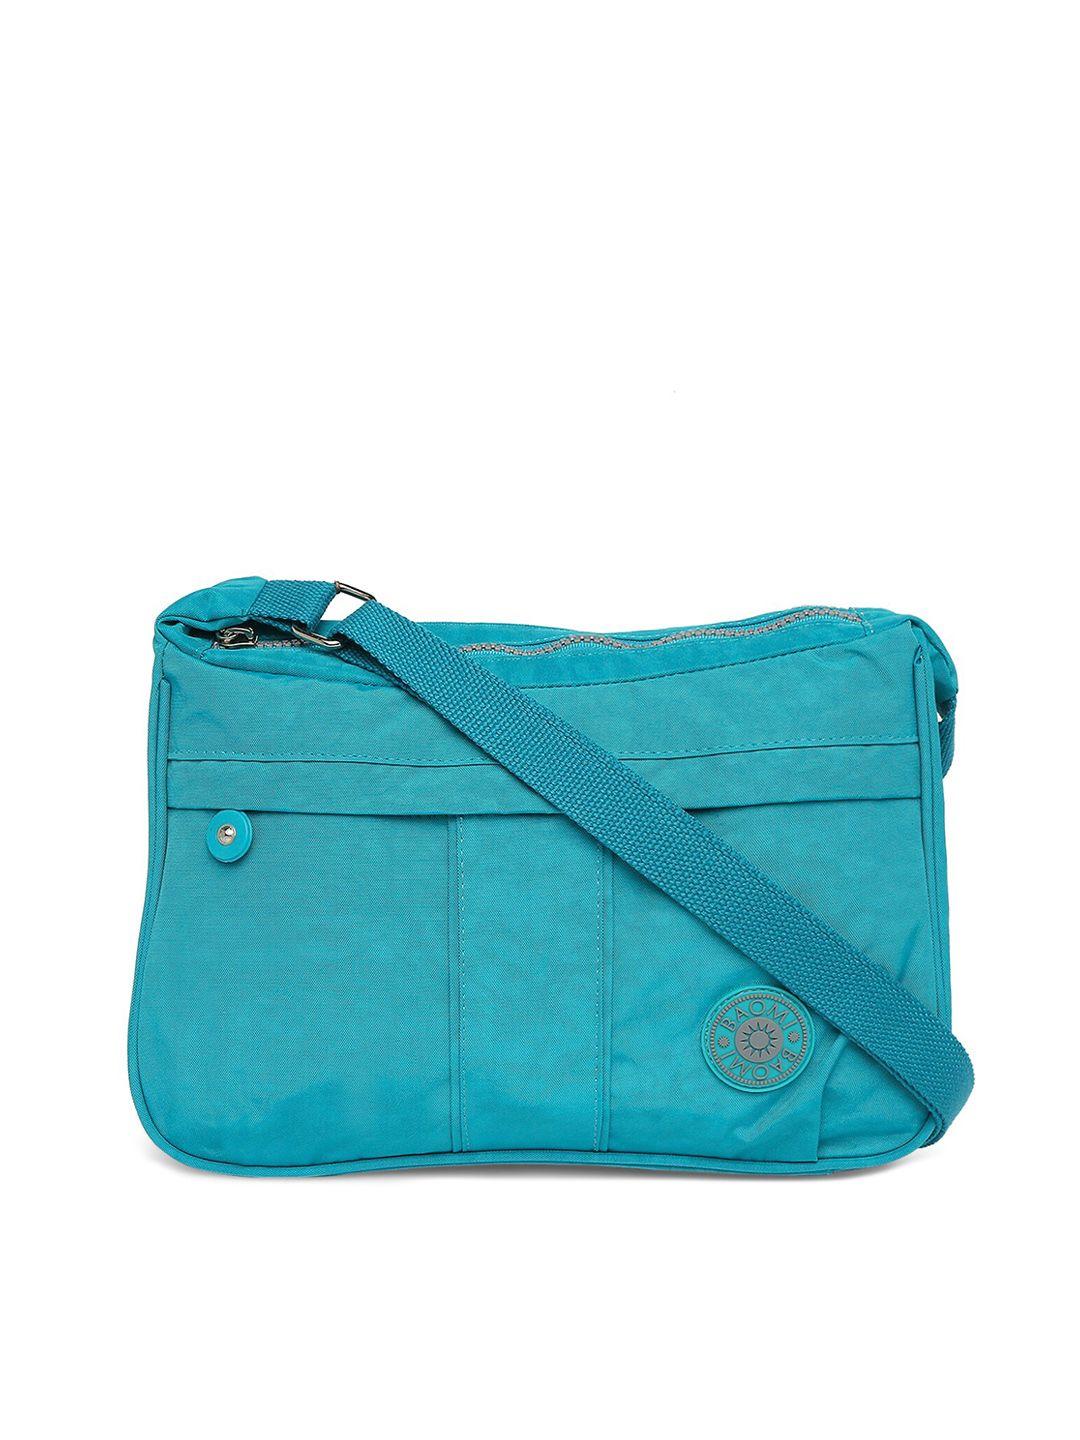 baomi blue structured sling bag